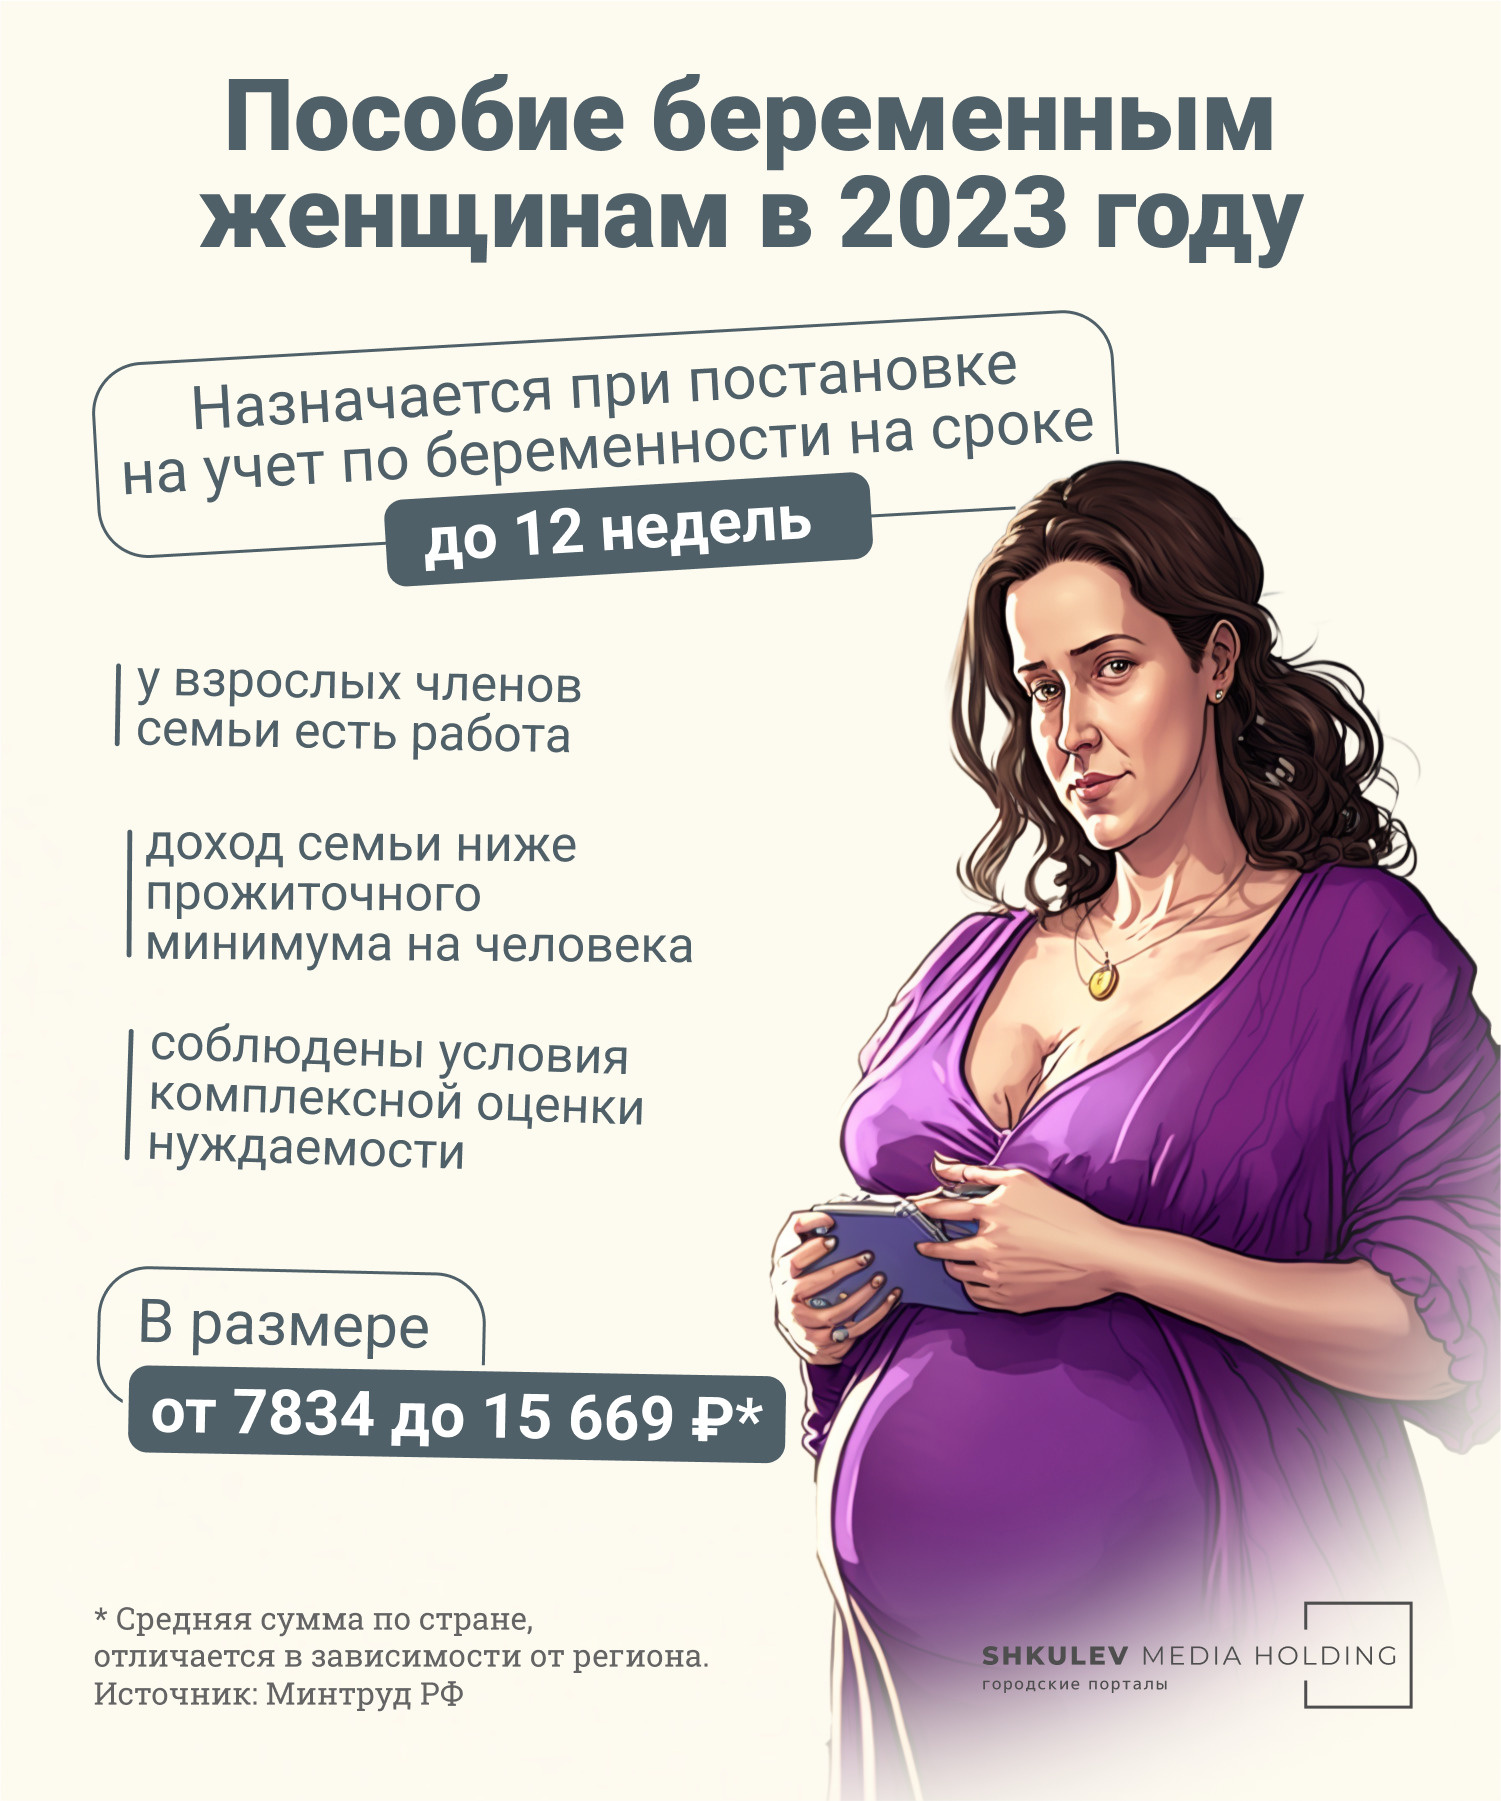 Пособие беременным женщинам назначают при условии, что они встали на учет в женской консультации на раннем сроке